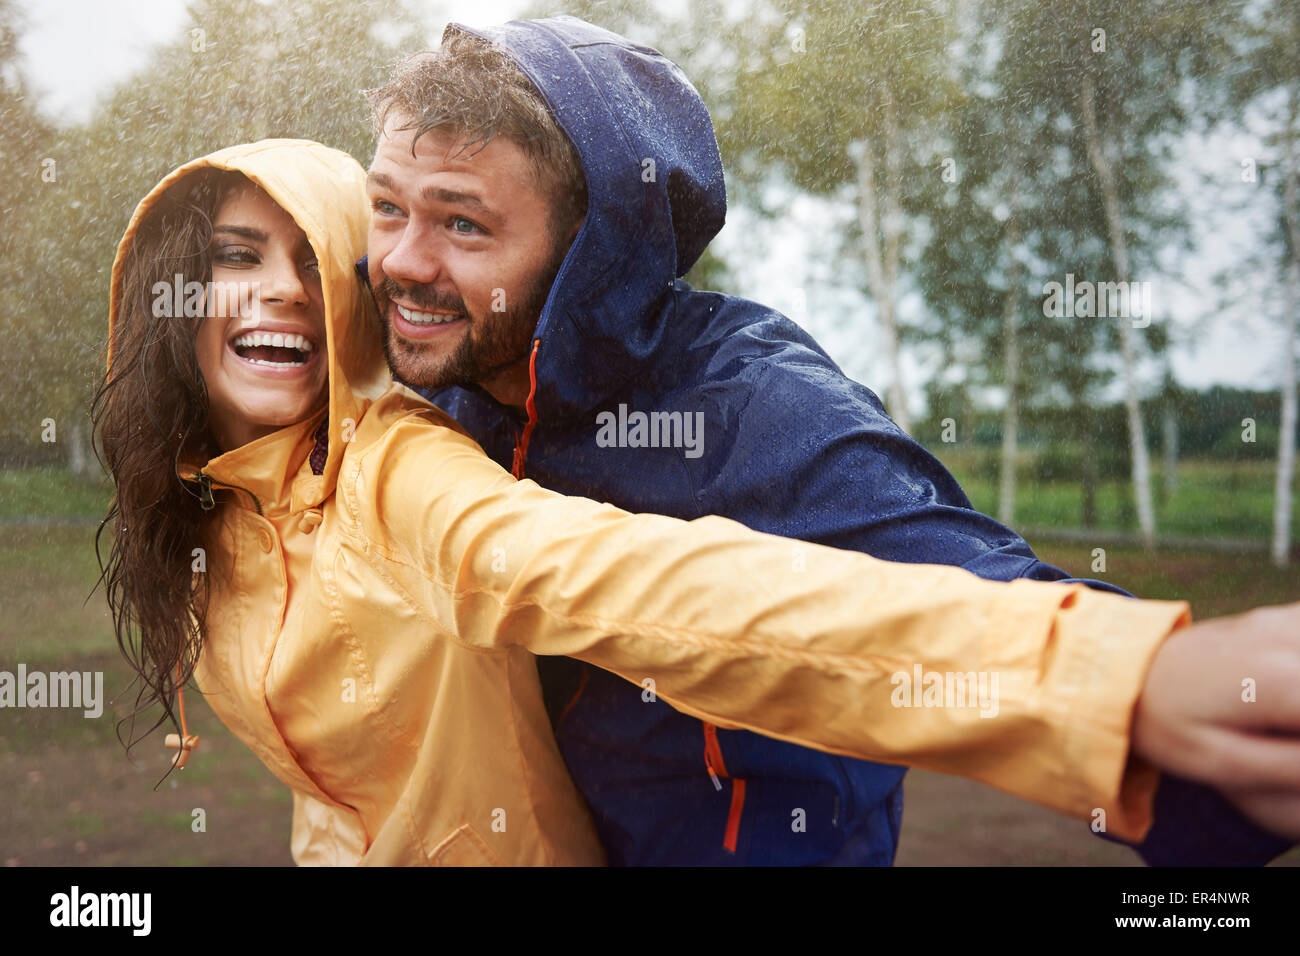 Romantic love in the pouring rain. Debica, Poland Stock Photo